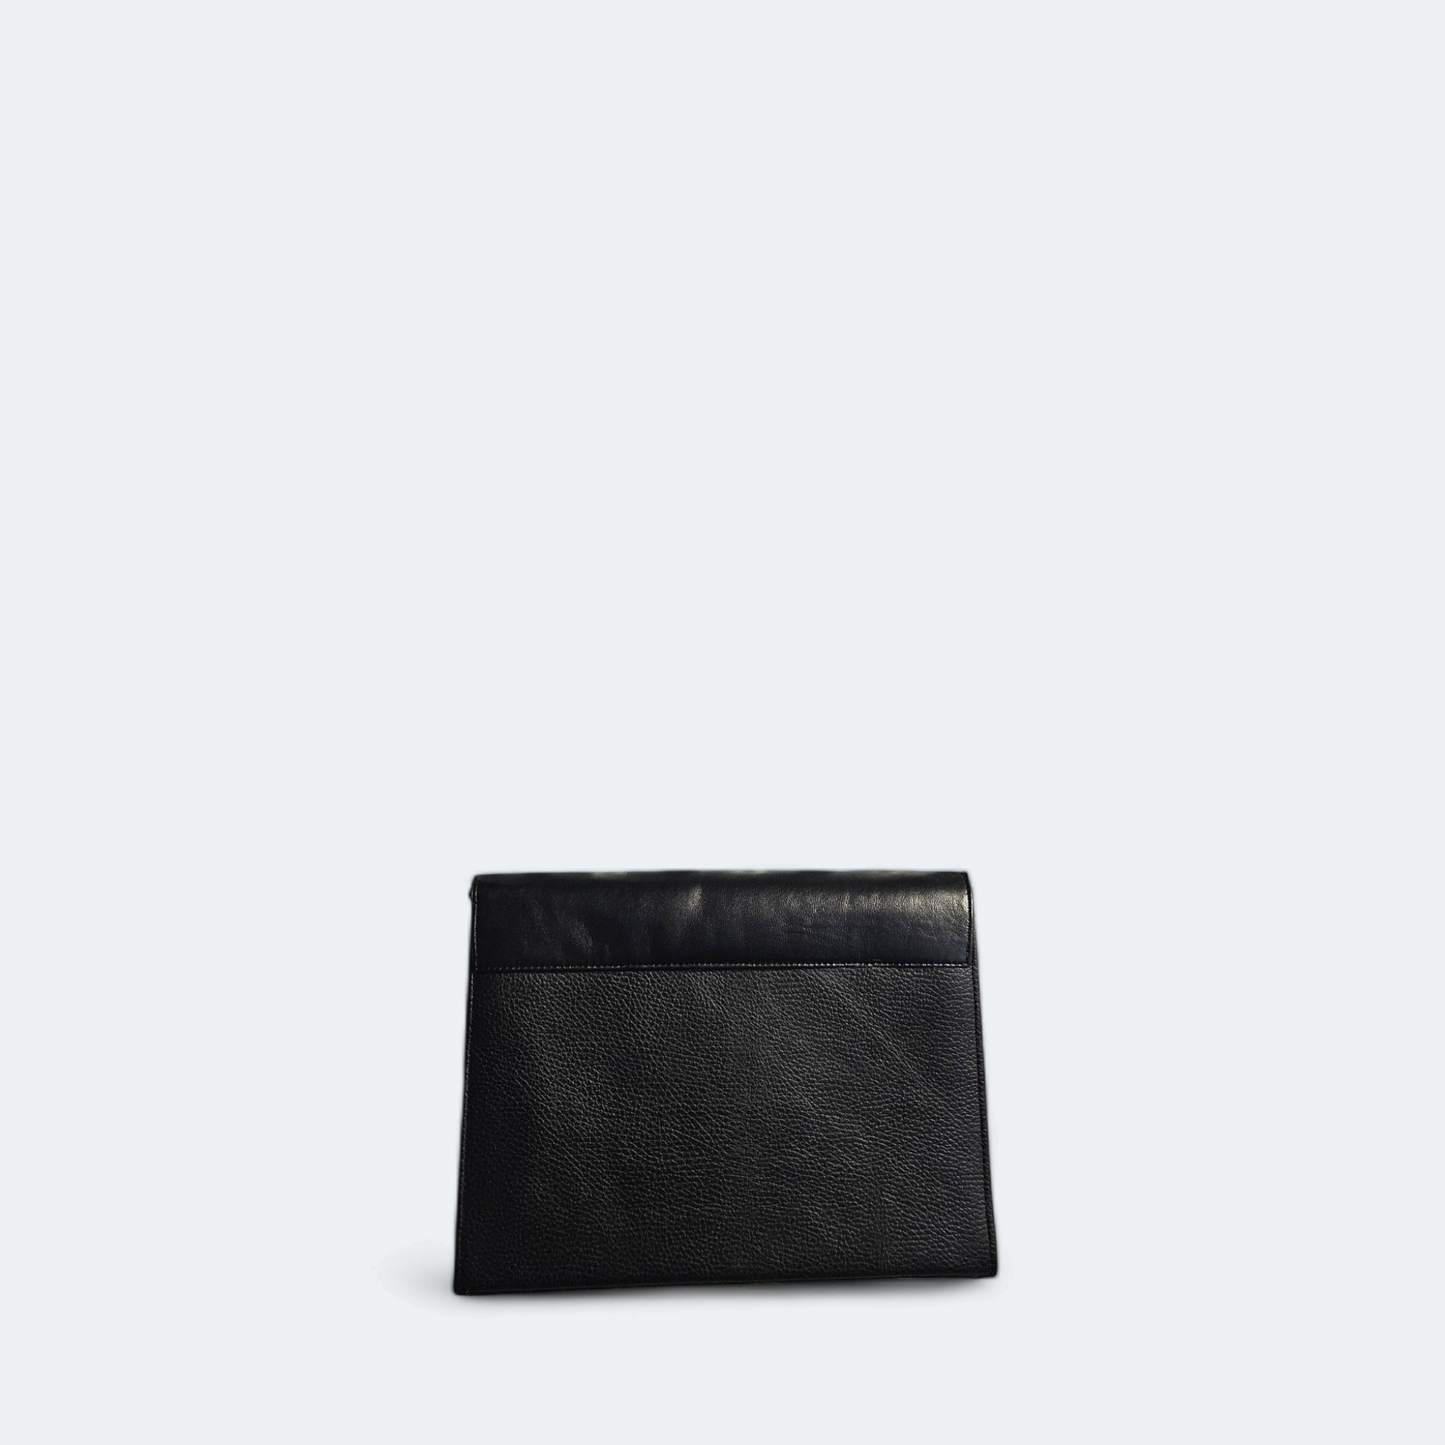 Black leather shoulder bag with pattern